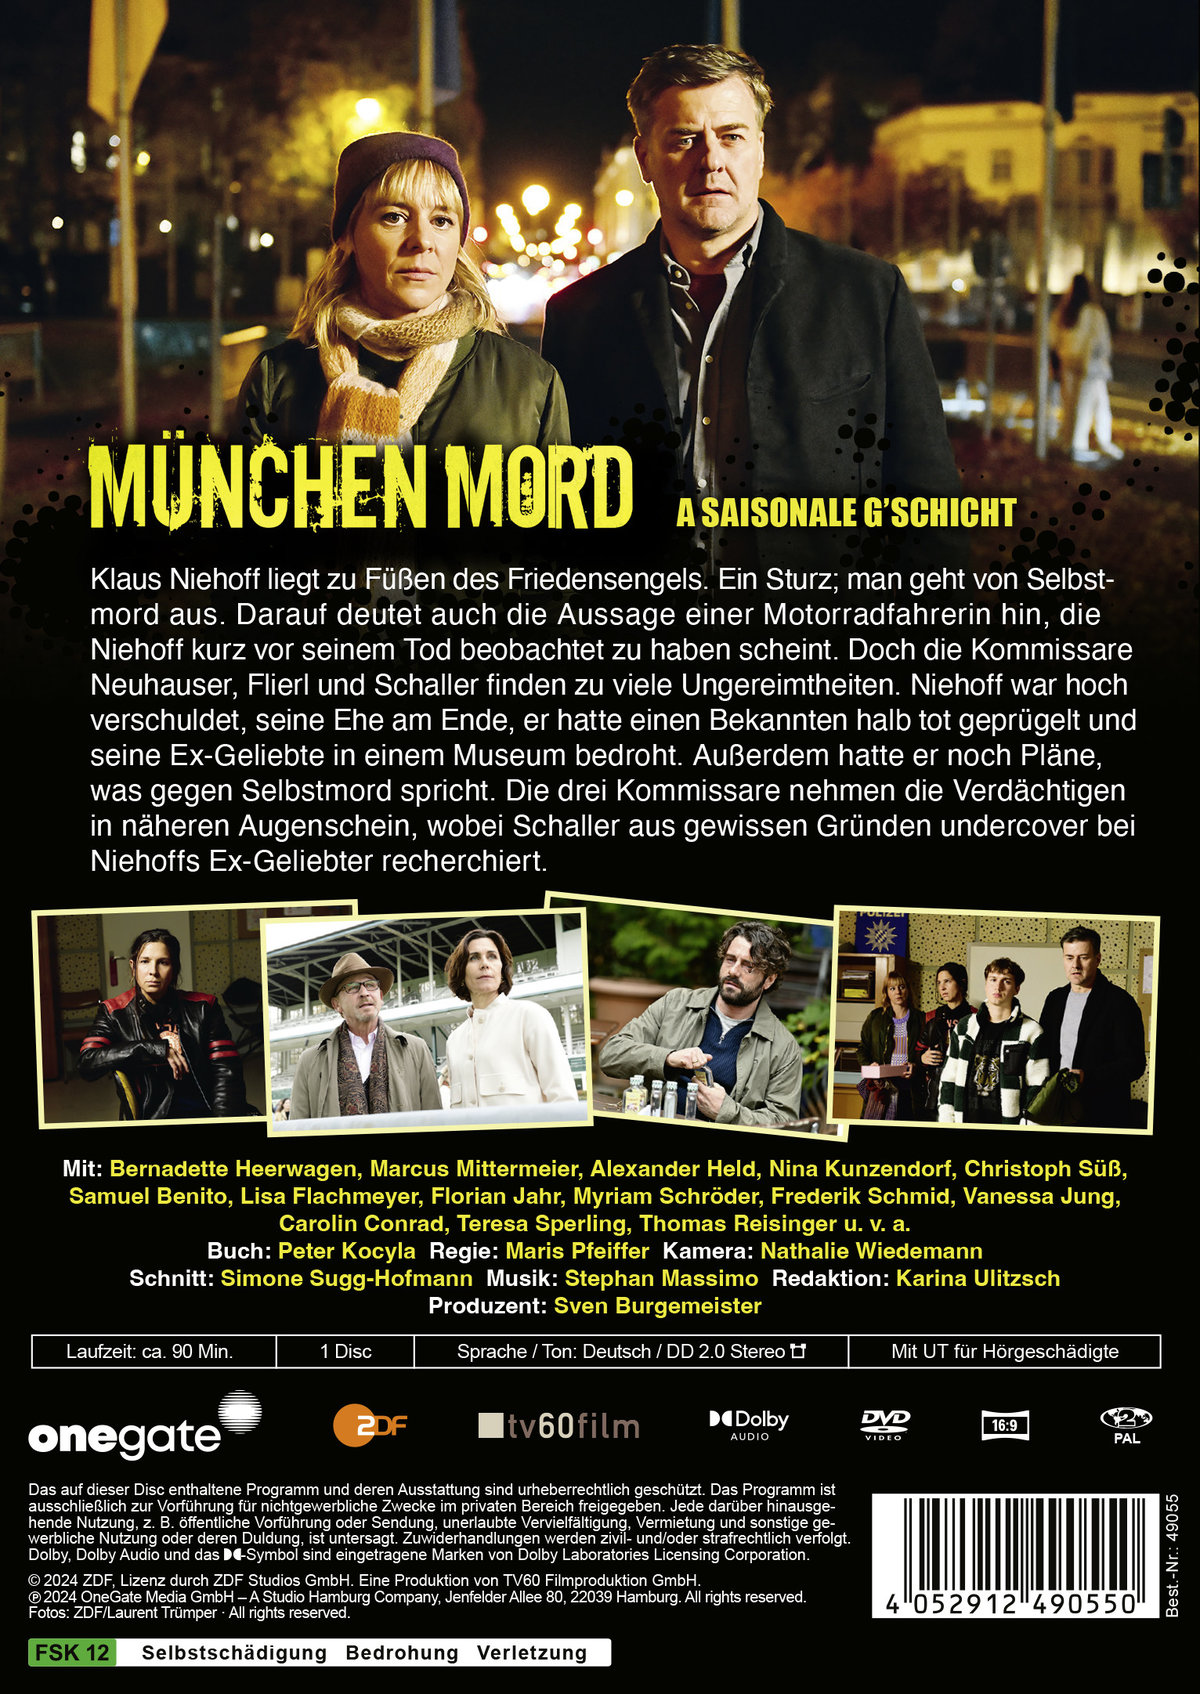 München Mord – A saisonale G'schicht  (DVD)